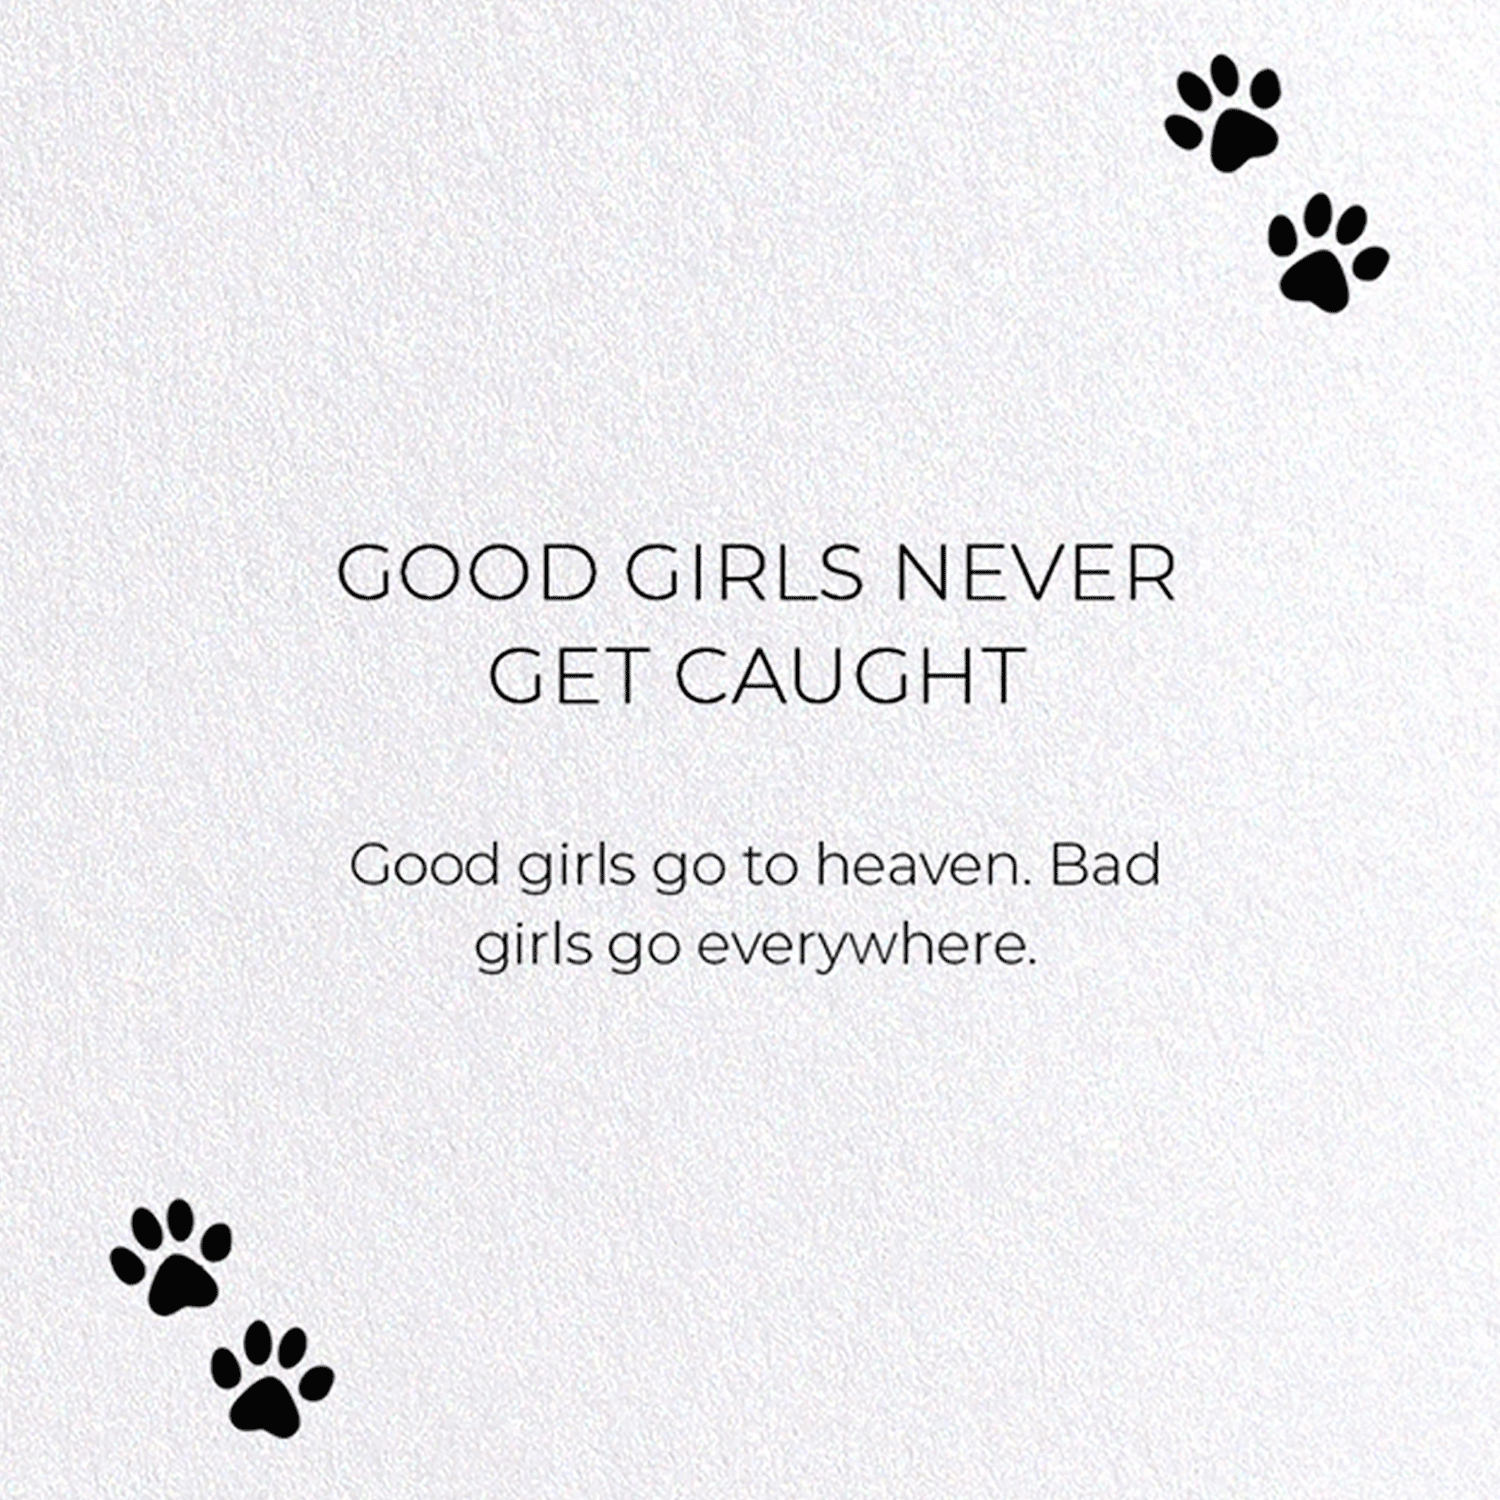 GOOD GIRLS NEVER GET CAUGHT